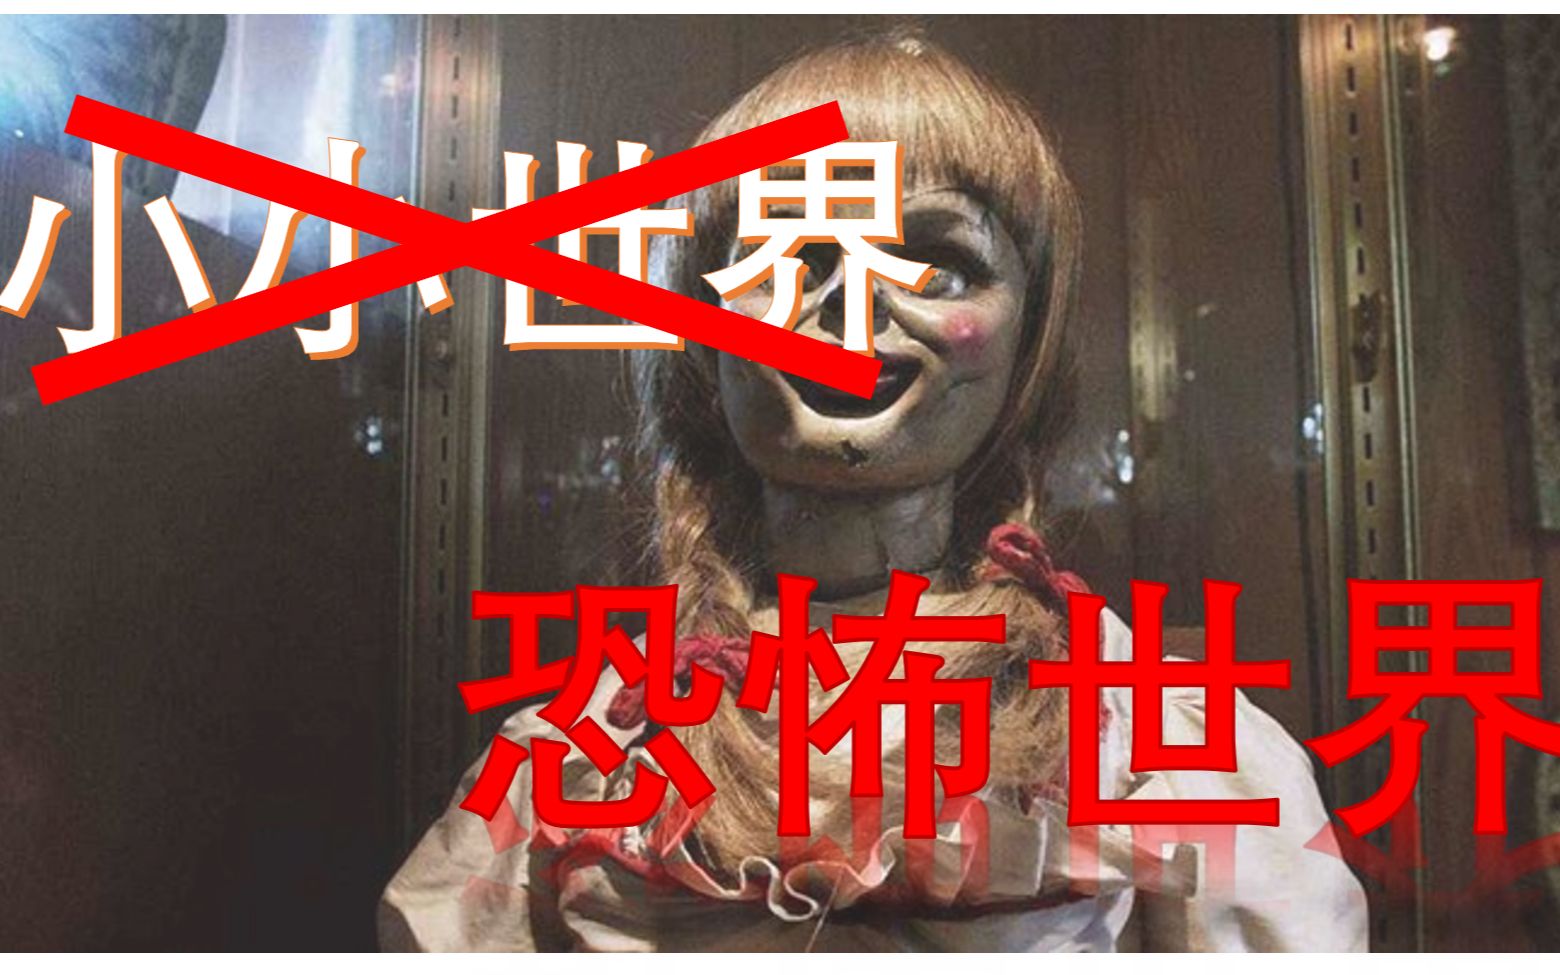 极度阴间！这绝对是全日本最恐怖的工作《夜间警备》全结局-笨尼尼子-笨尼尼子-哔哩哔哩视频